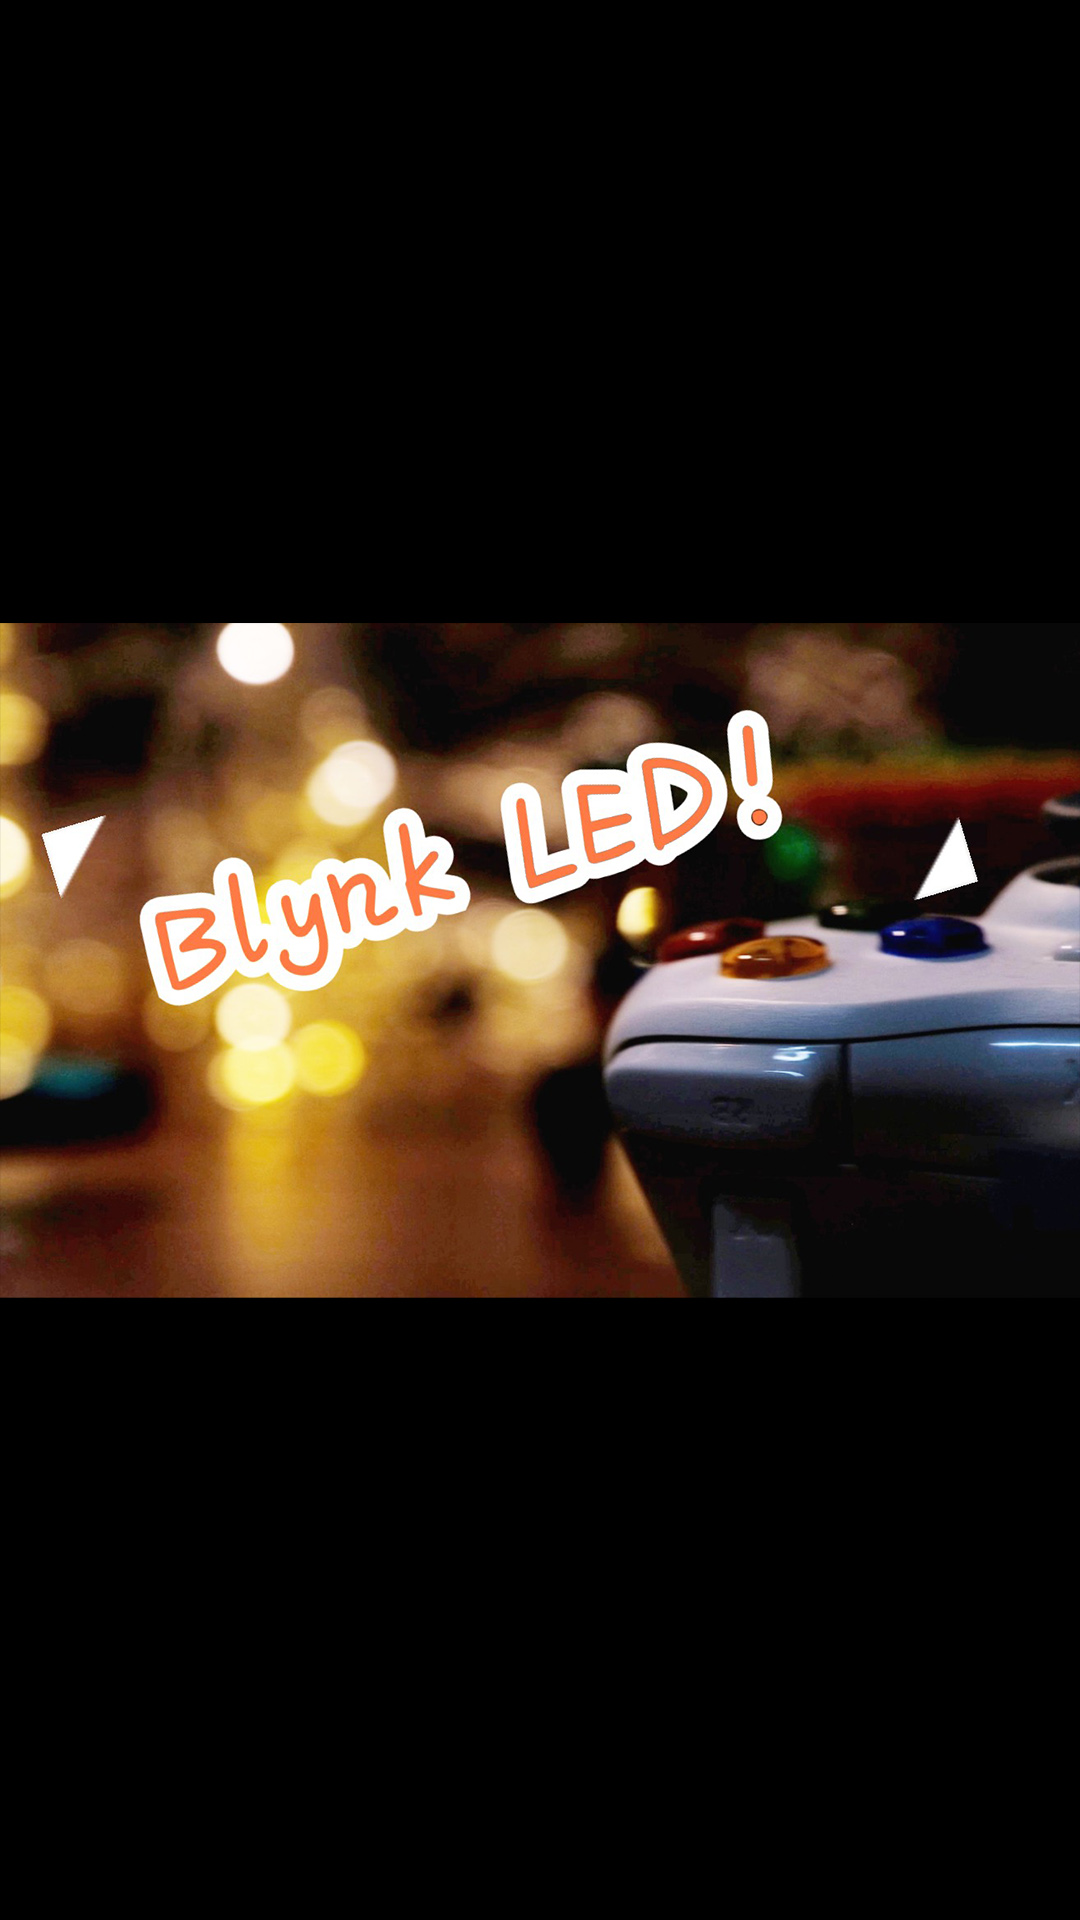 【自己搞着玩】送给女朋友的蓝牙LED灯 blynk Arduino #物联网 